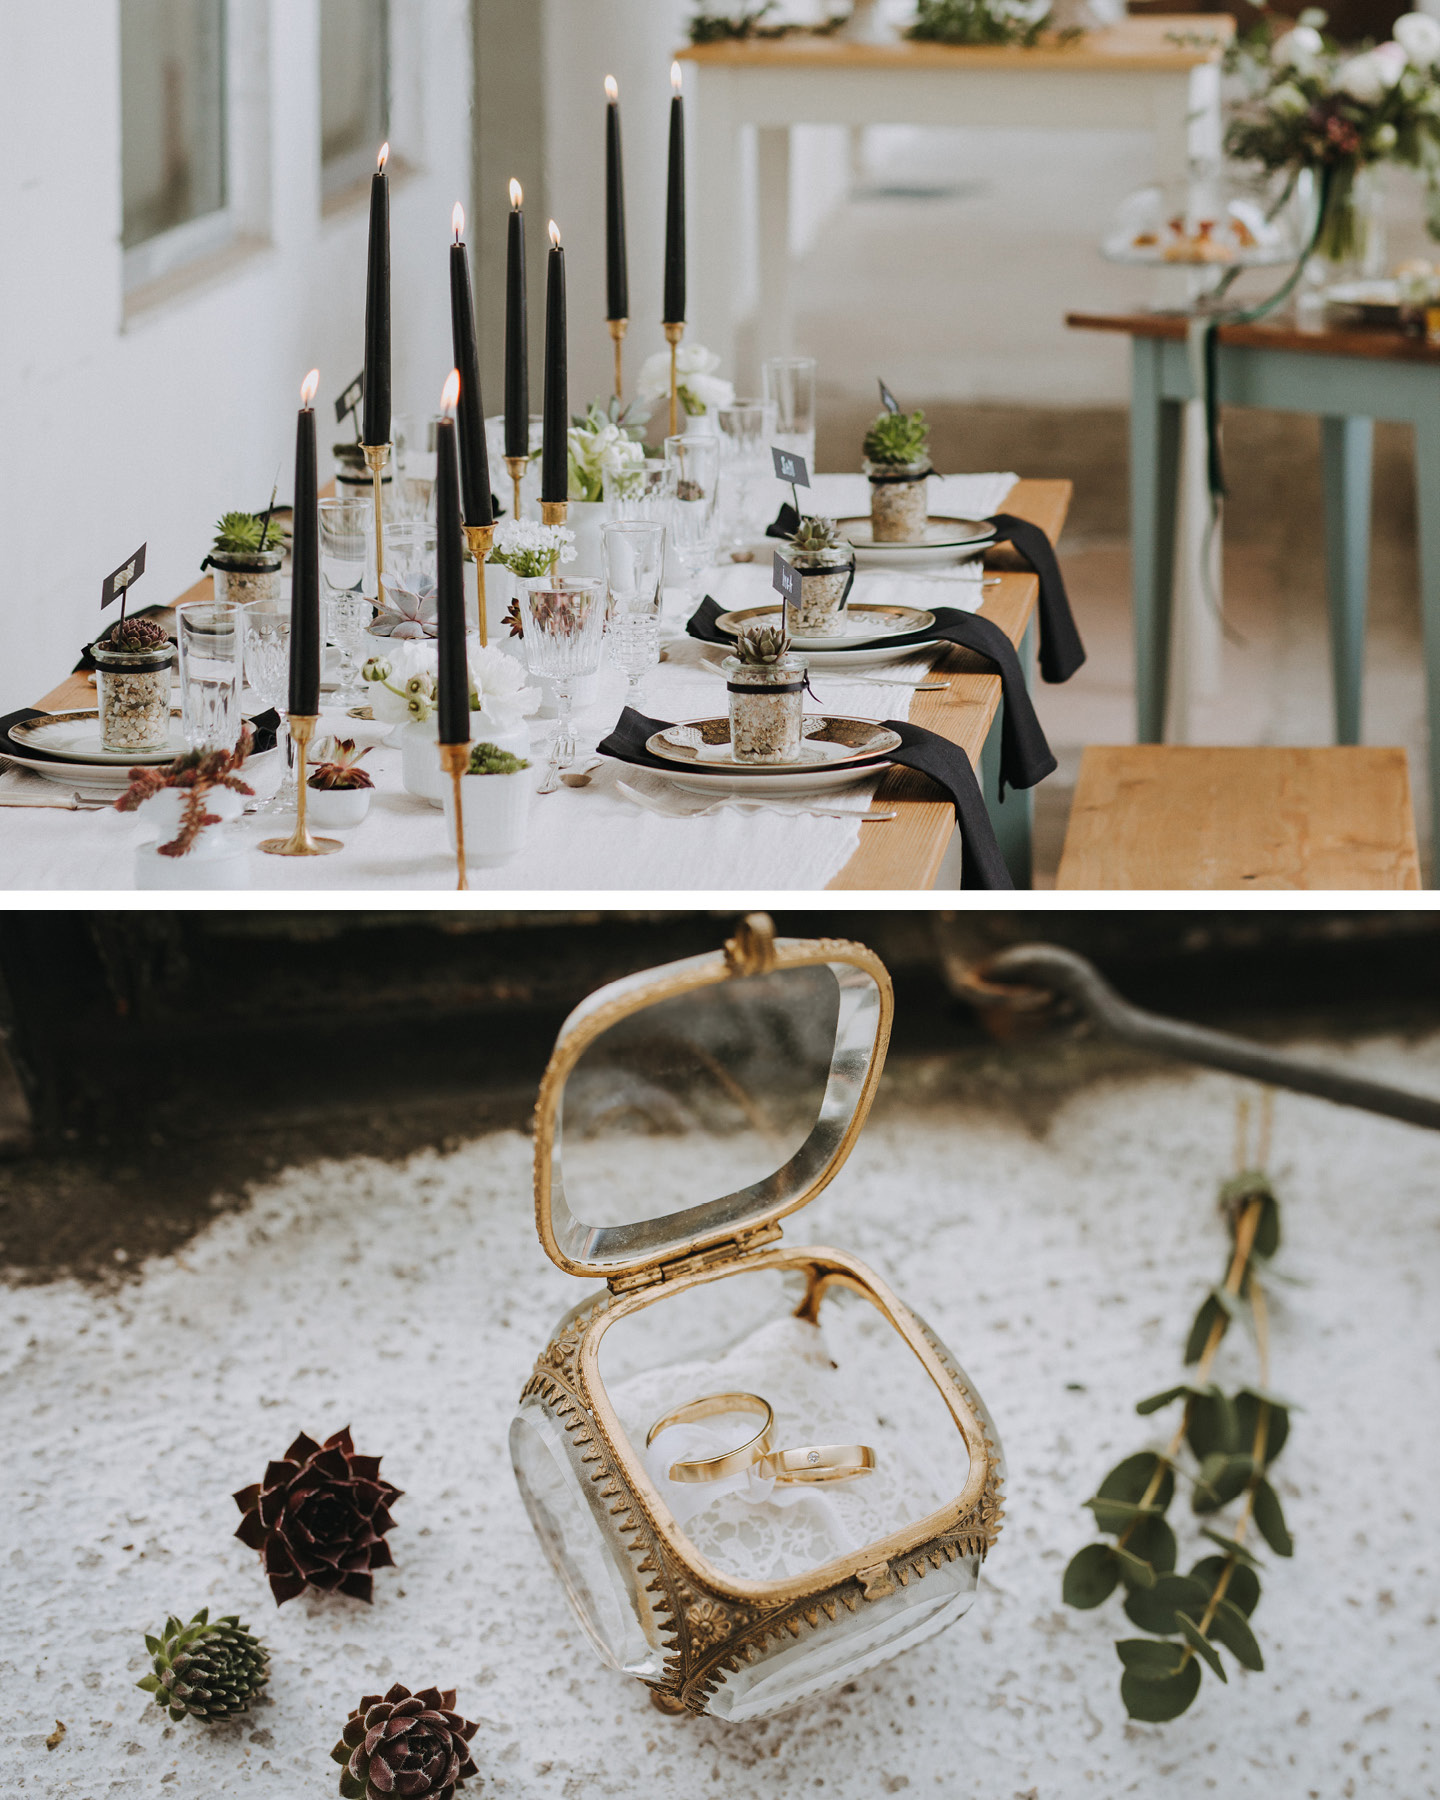 Hochzeitstafel ist minimalistisch in Schwarz & Weiß dekoriert.